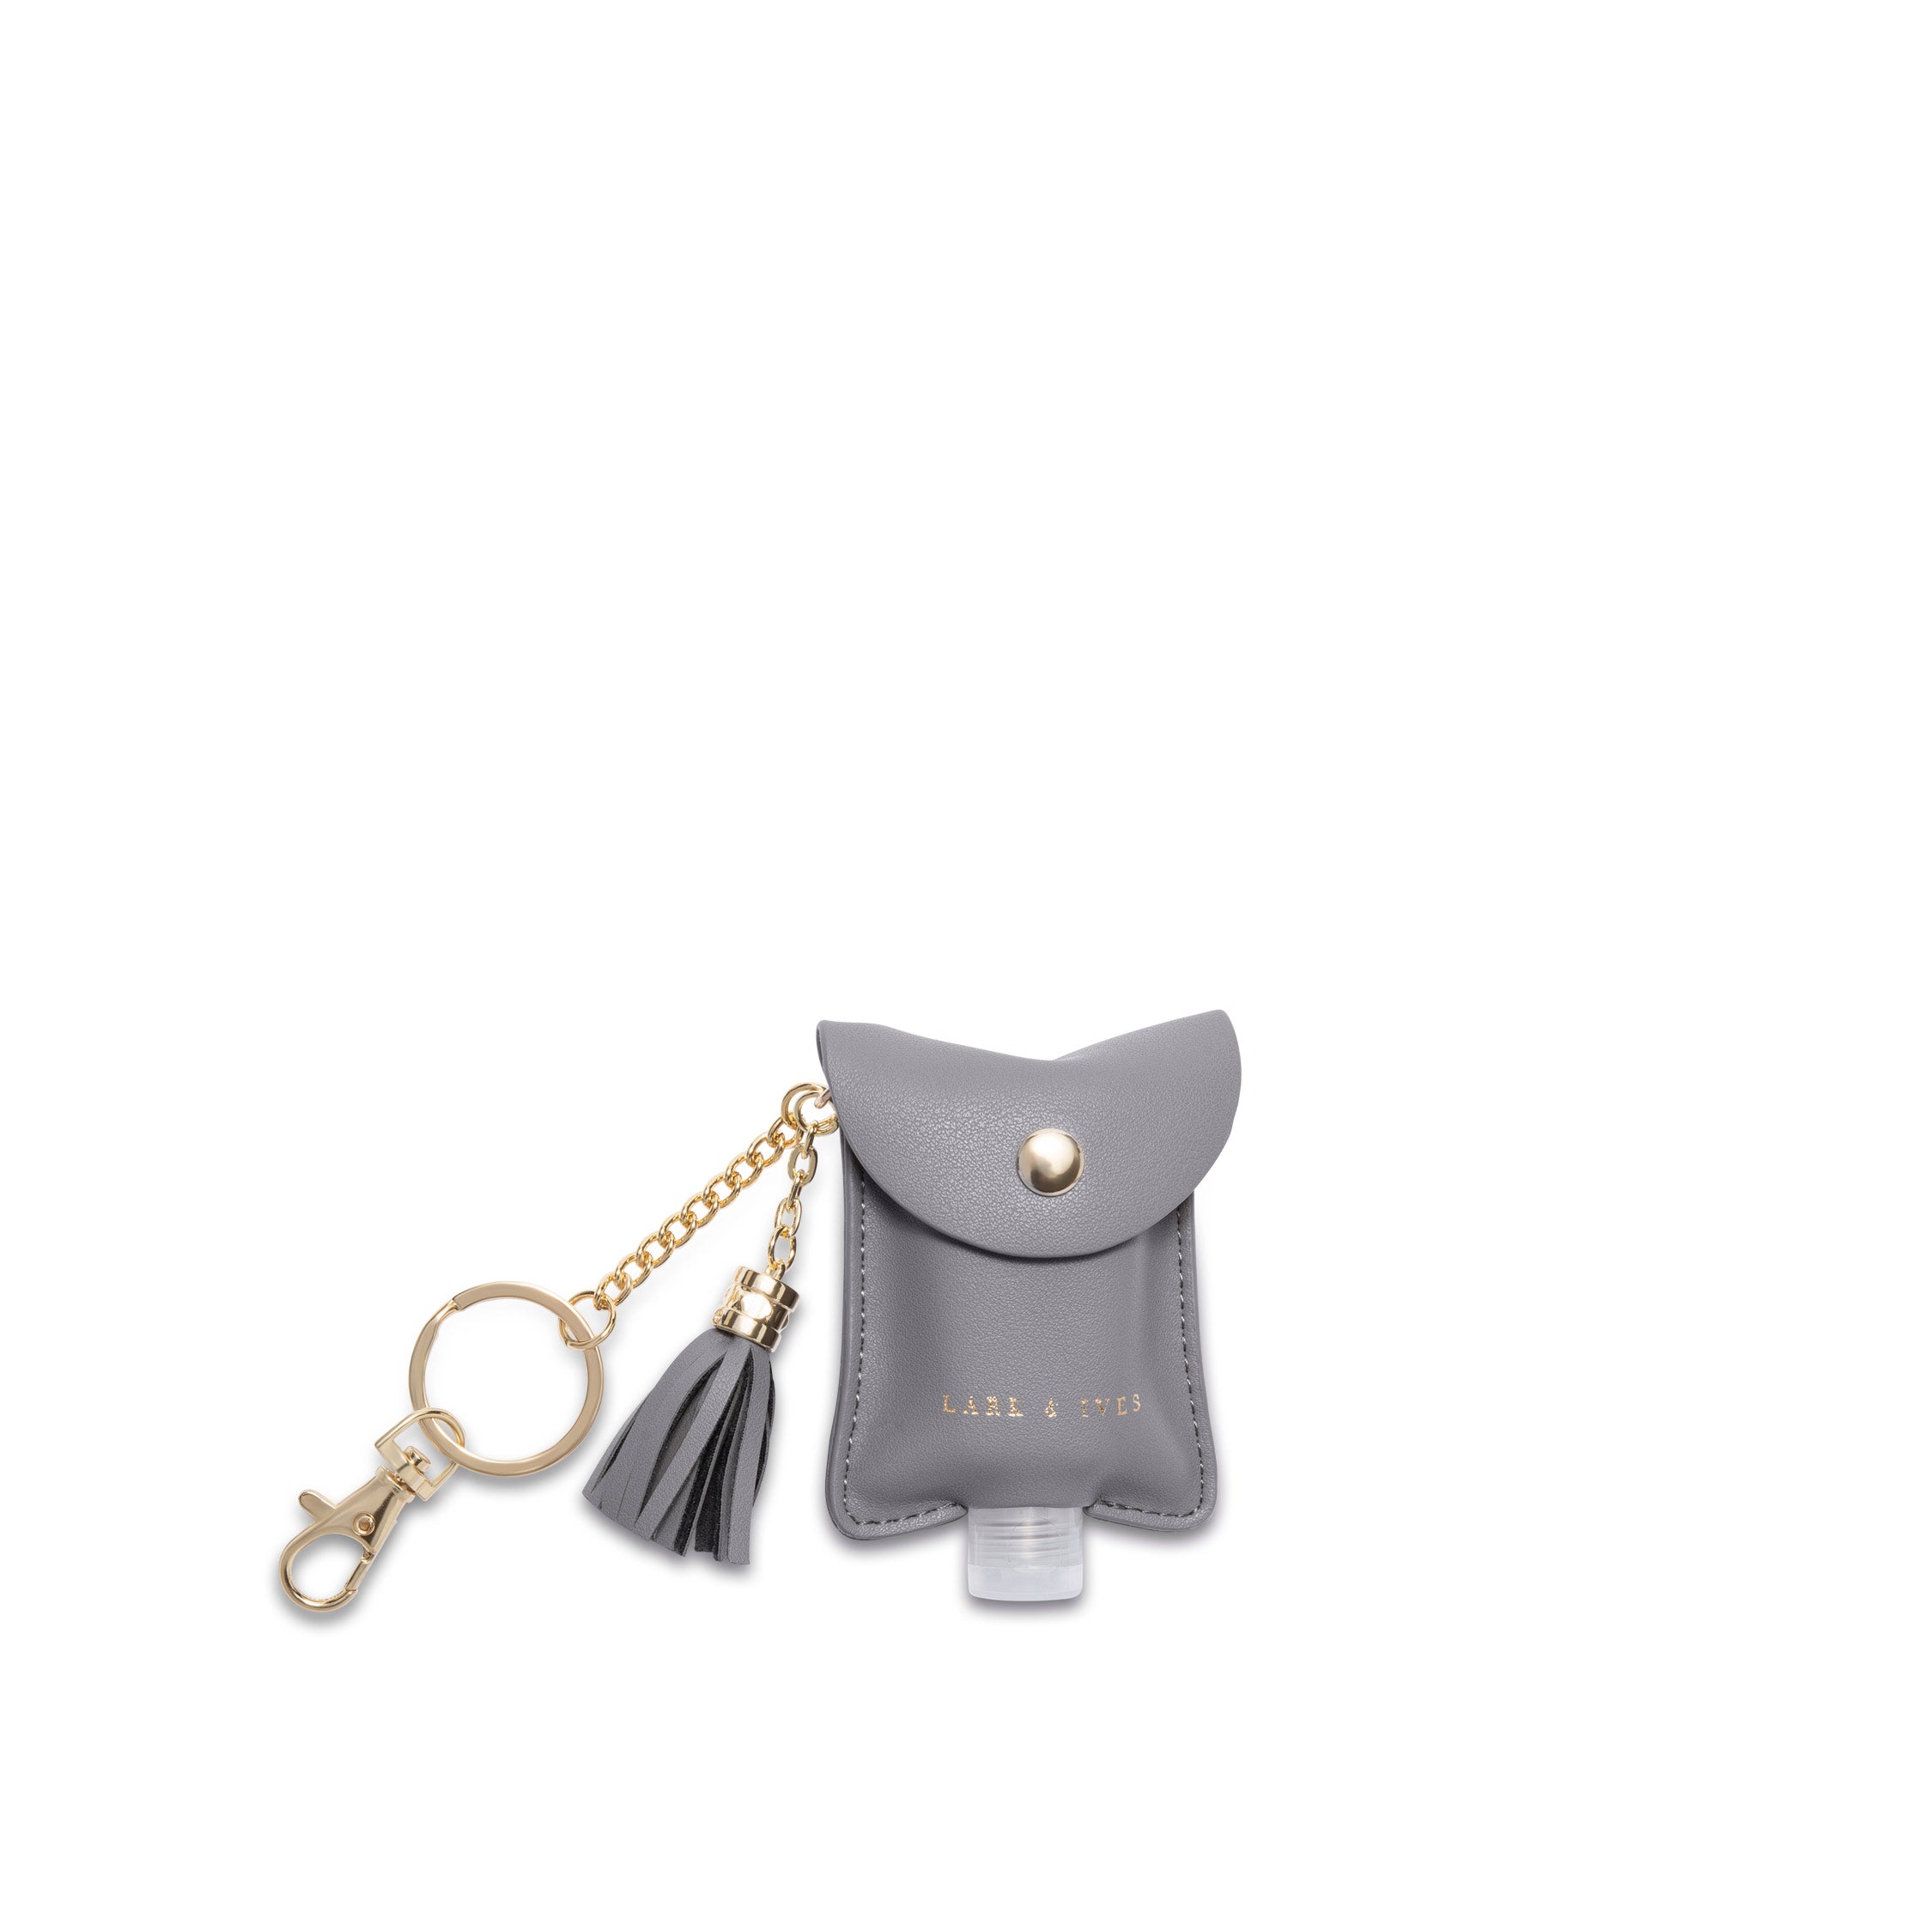 Hand Sanitizer holder keychain in Camo Vegan Leather – Annie Roonie Designs